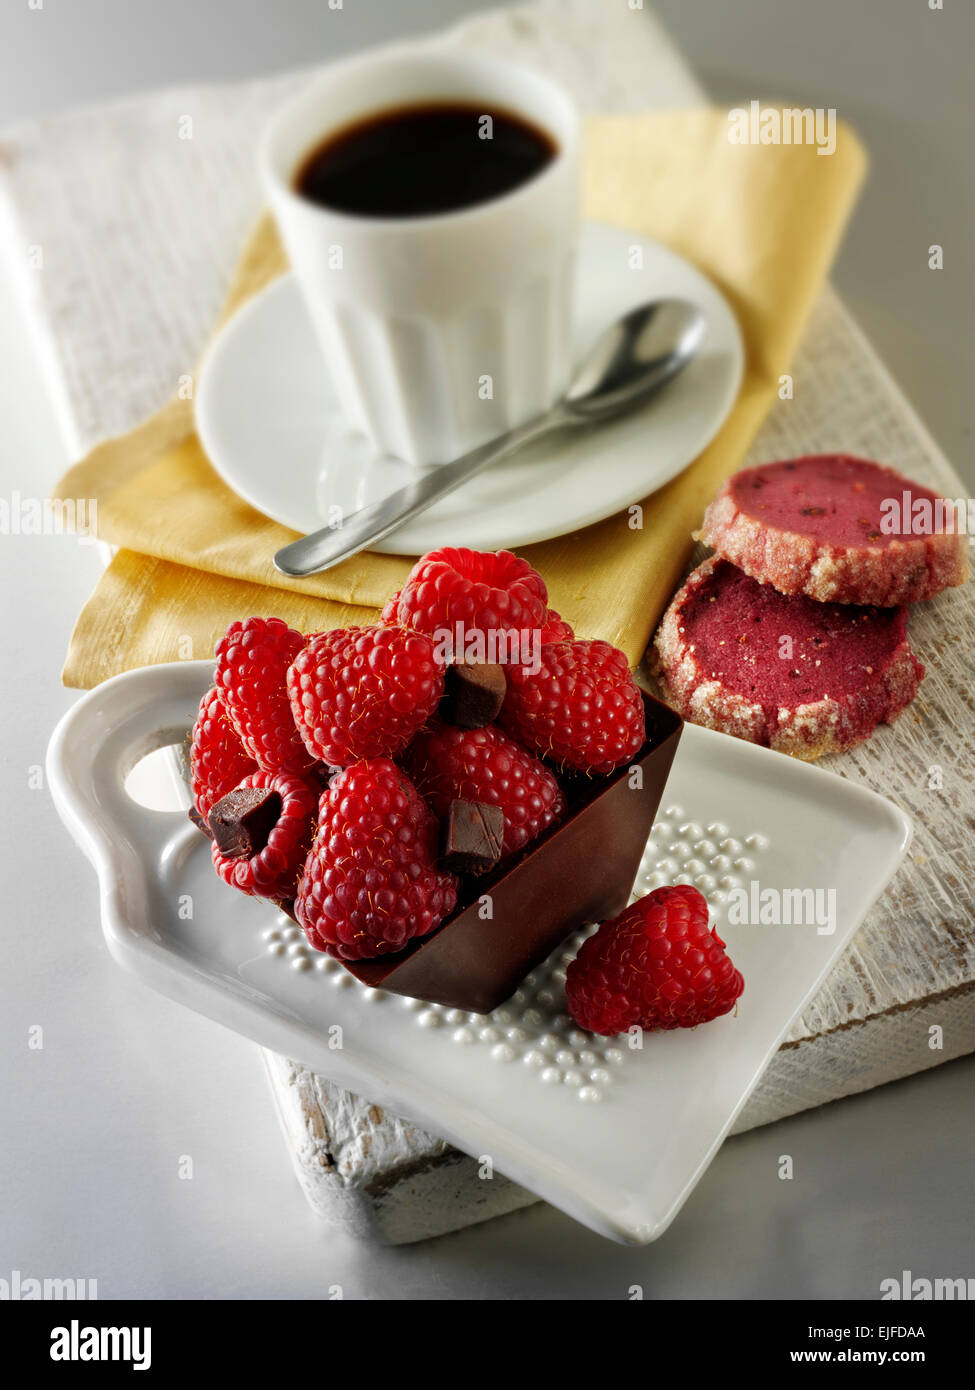 Una specialità di pasticceria fatta a mano ricca torta al cioccolato con scatola ripiena di lamponi freschi con caffè in un ambiente da tavola bianco Foto Stock